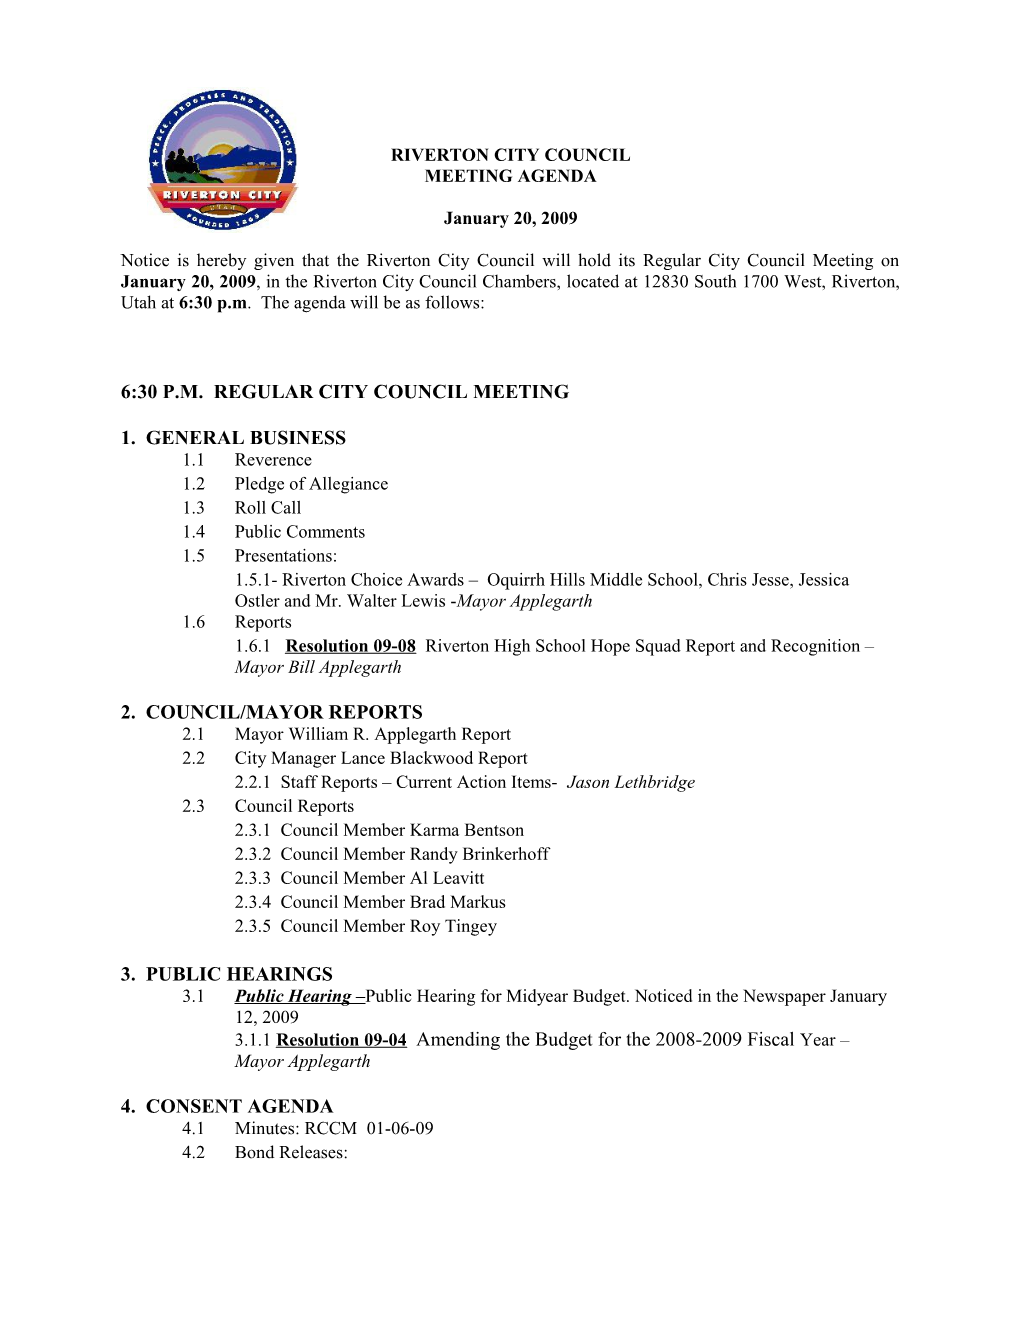 6:30 P.M. Regular City Council Meeting